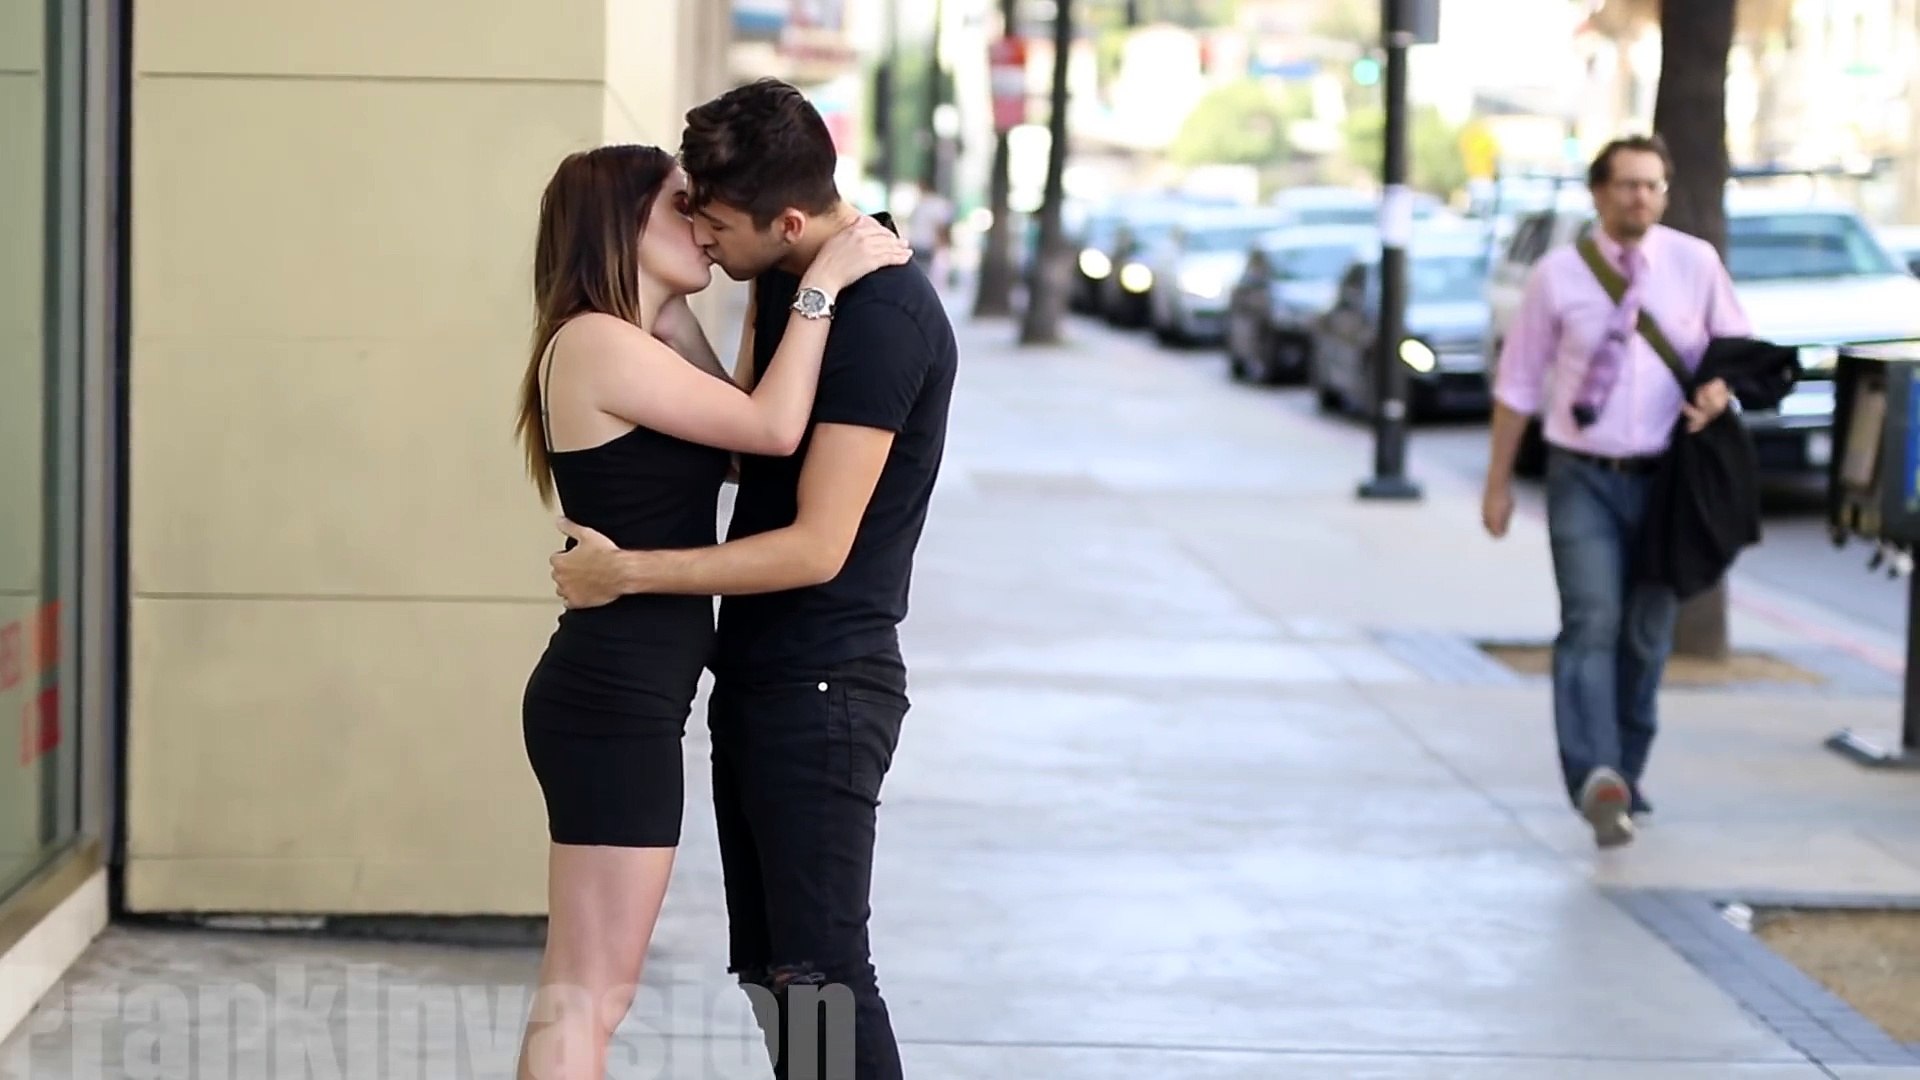 Kissing Prank - Balance Game! - video Dailymotion